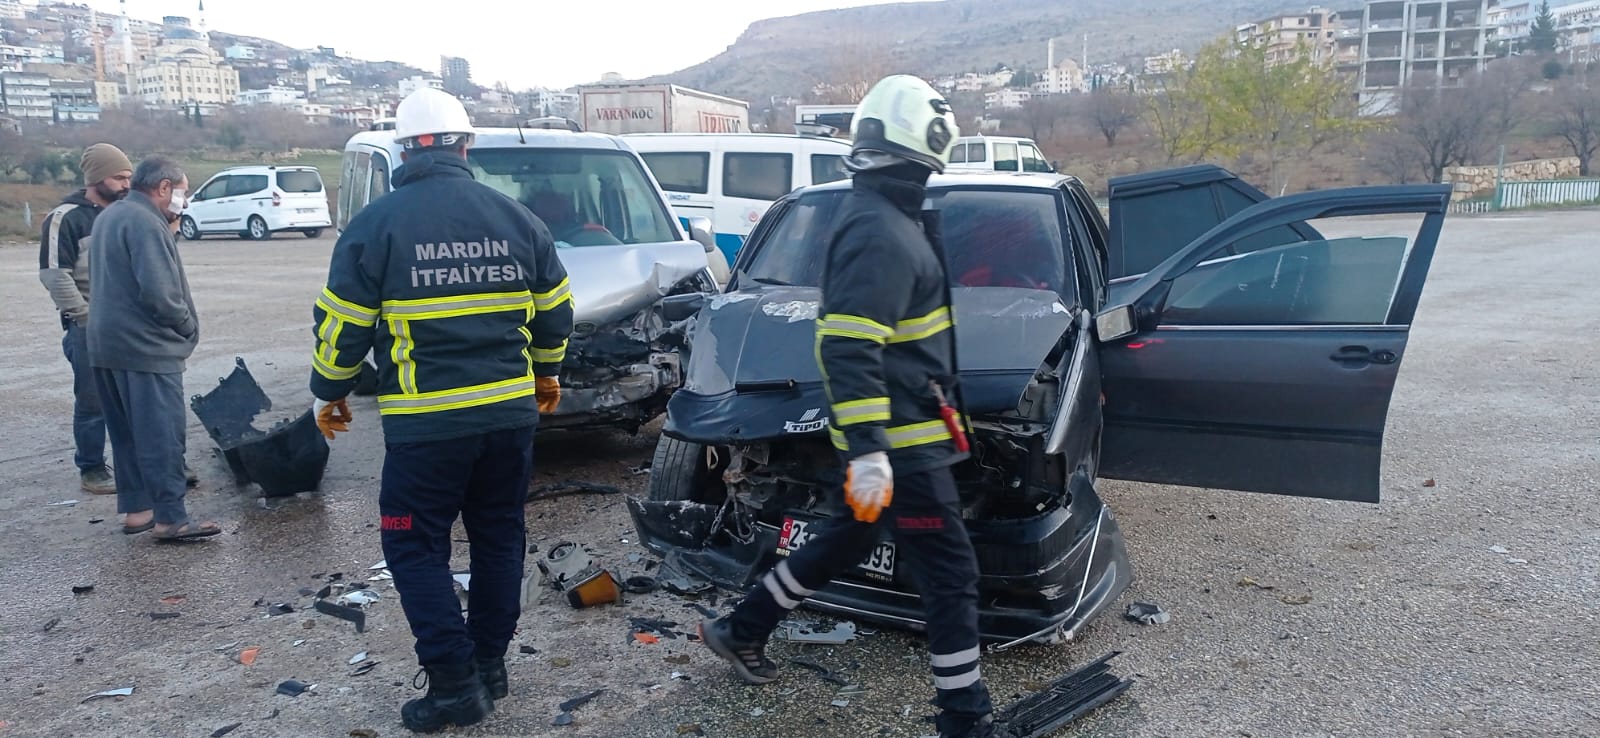 Mardin’de meydana gelen trafik kazasında, bir otomobil ile hafif ticari araç çarpıştı ve 4 kişi yaralandı.